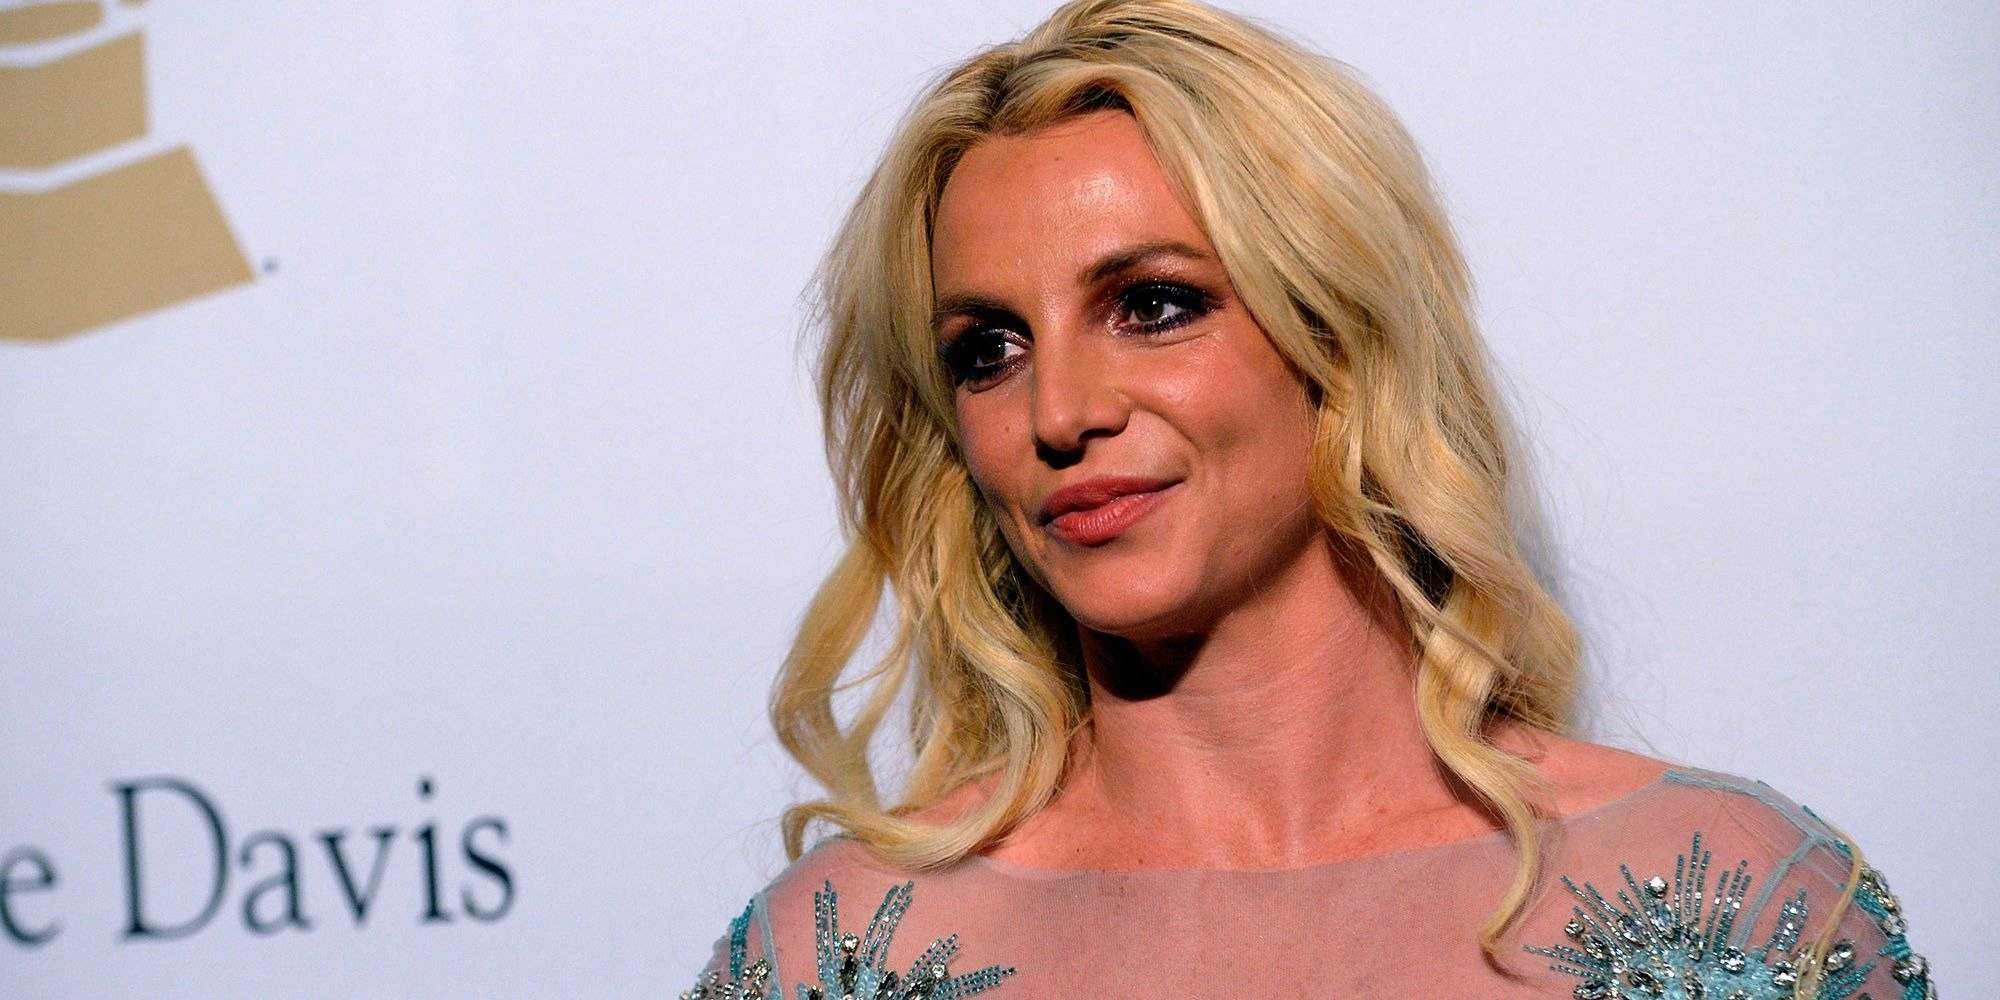 Ara sí, Britney Spears ja és 100% lliure